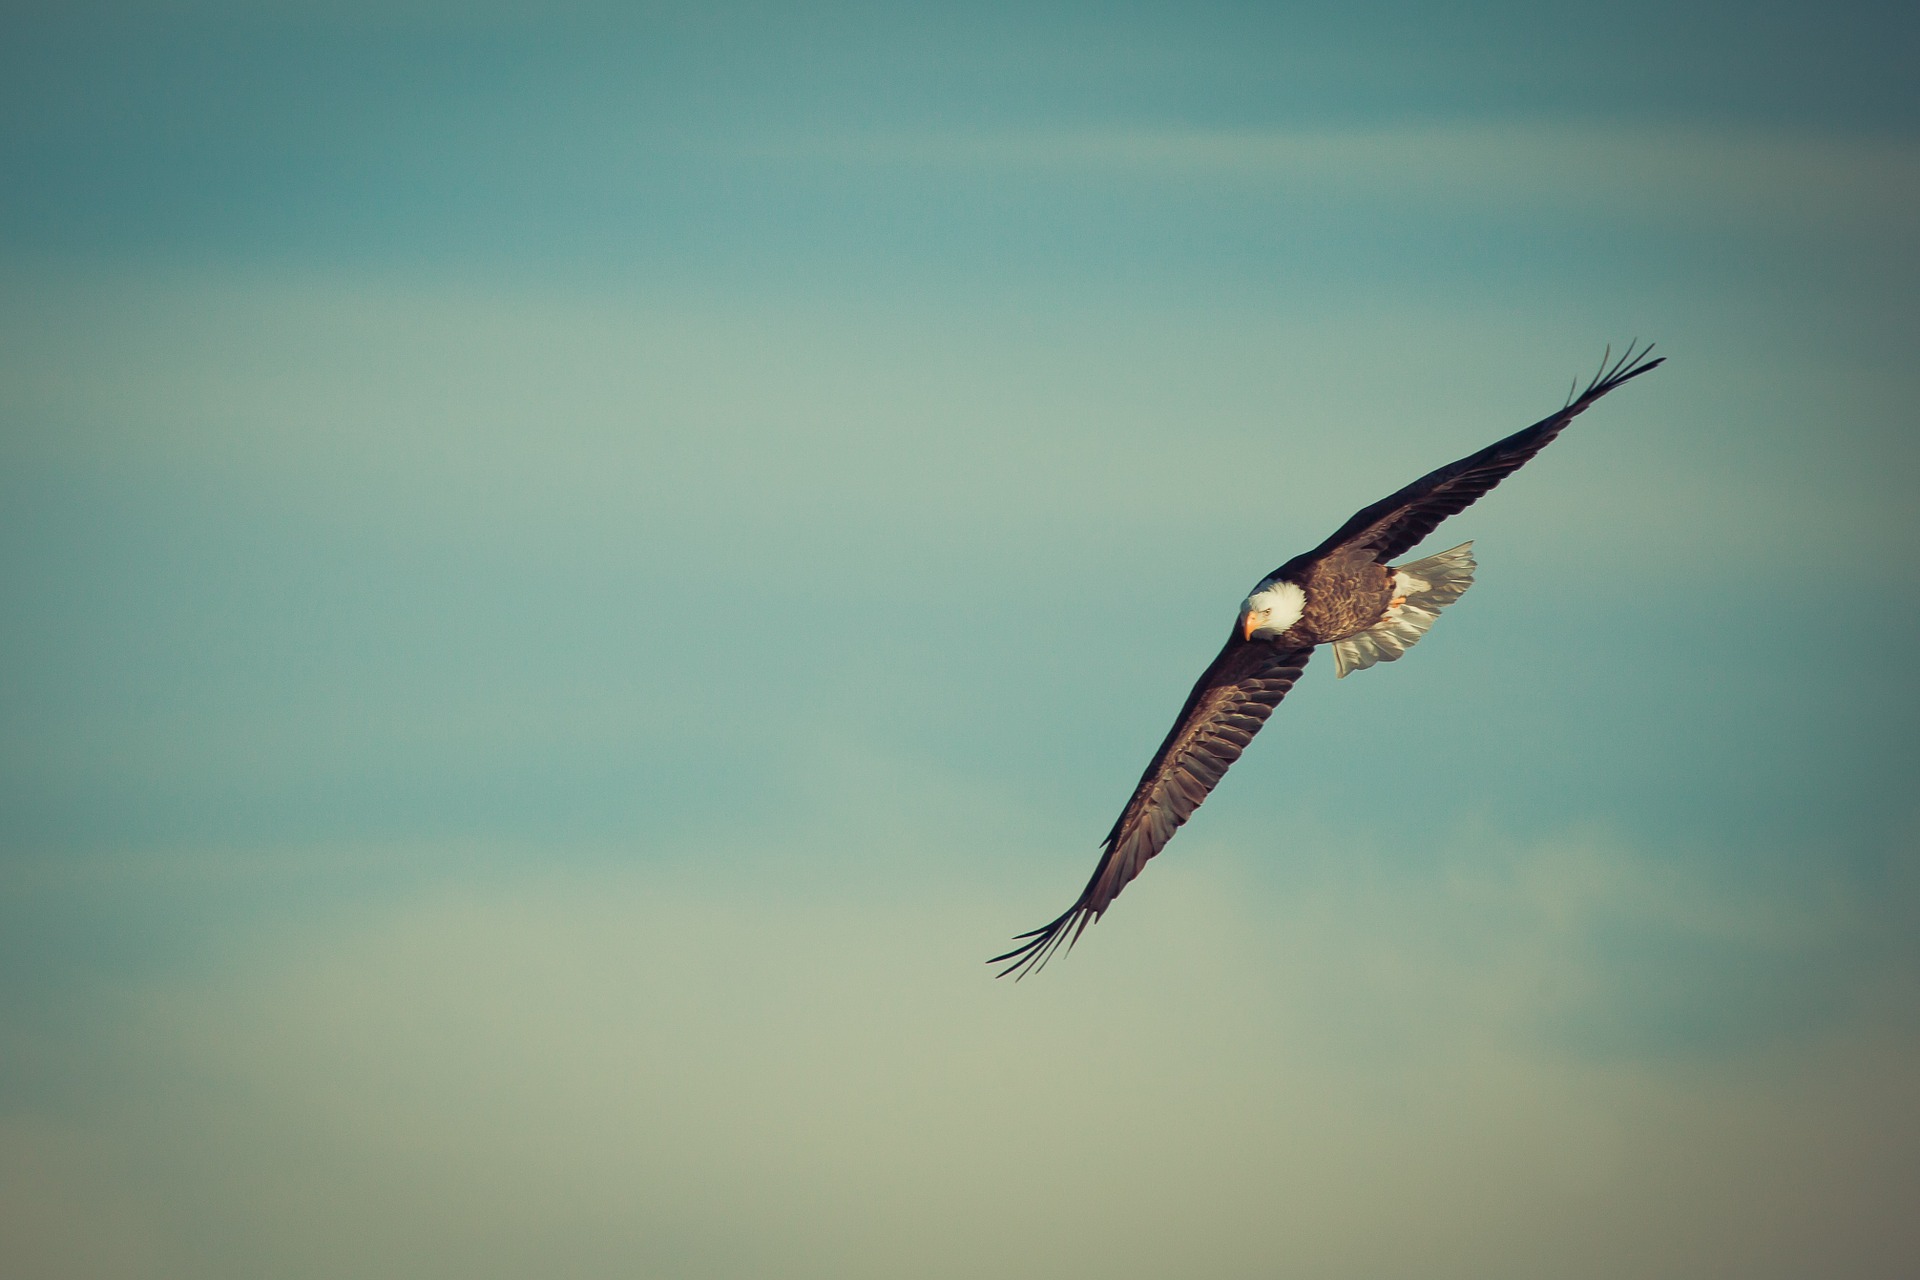 soaring eagle